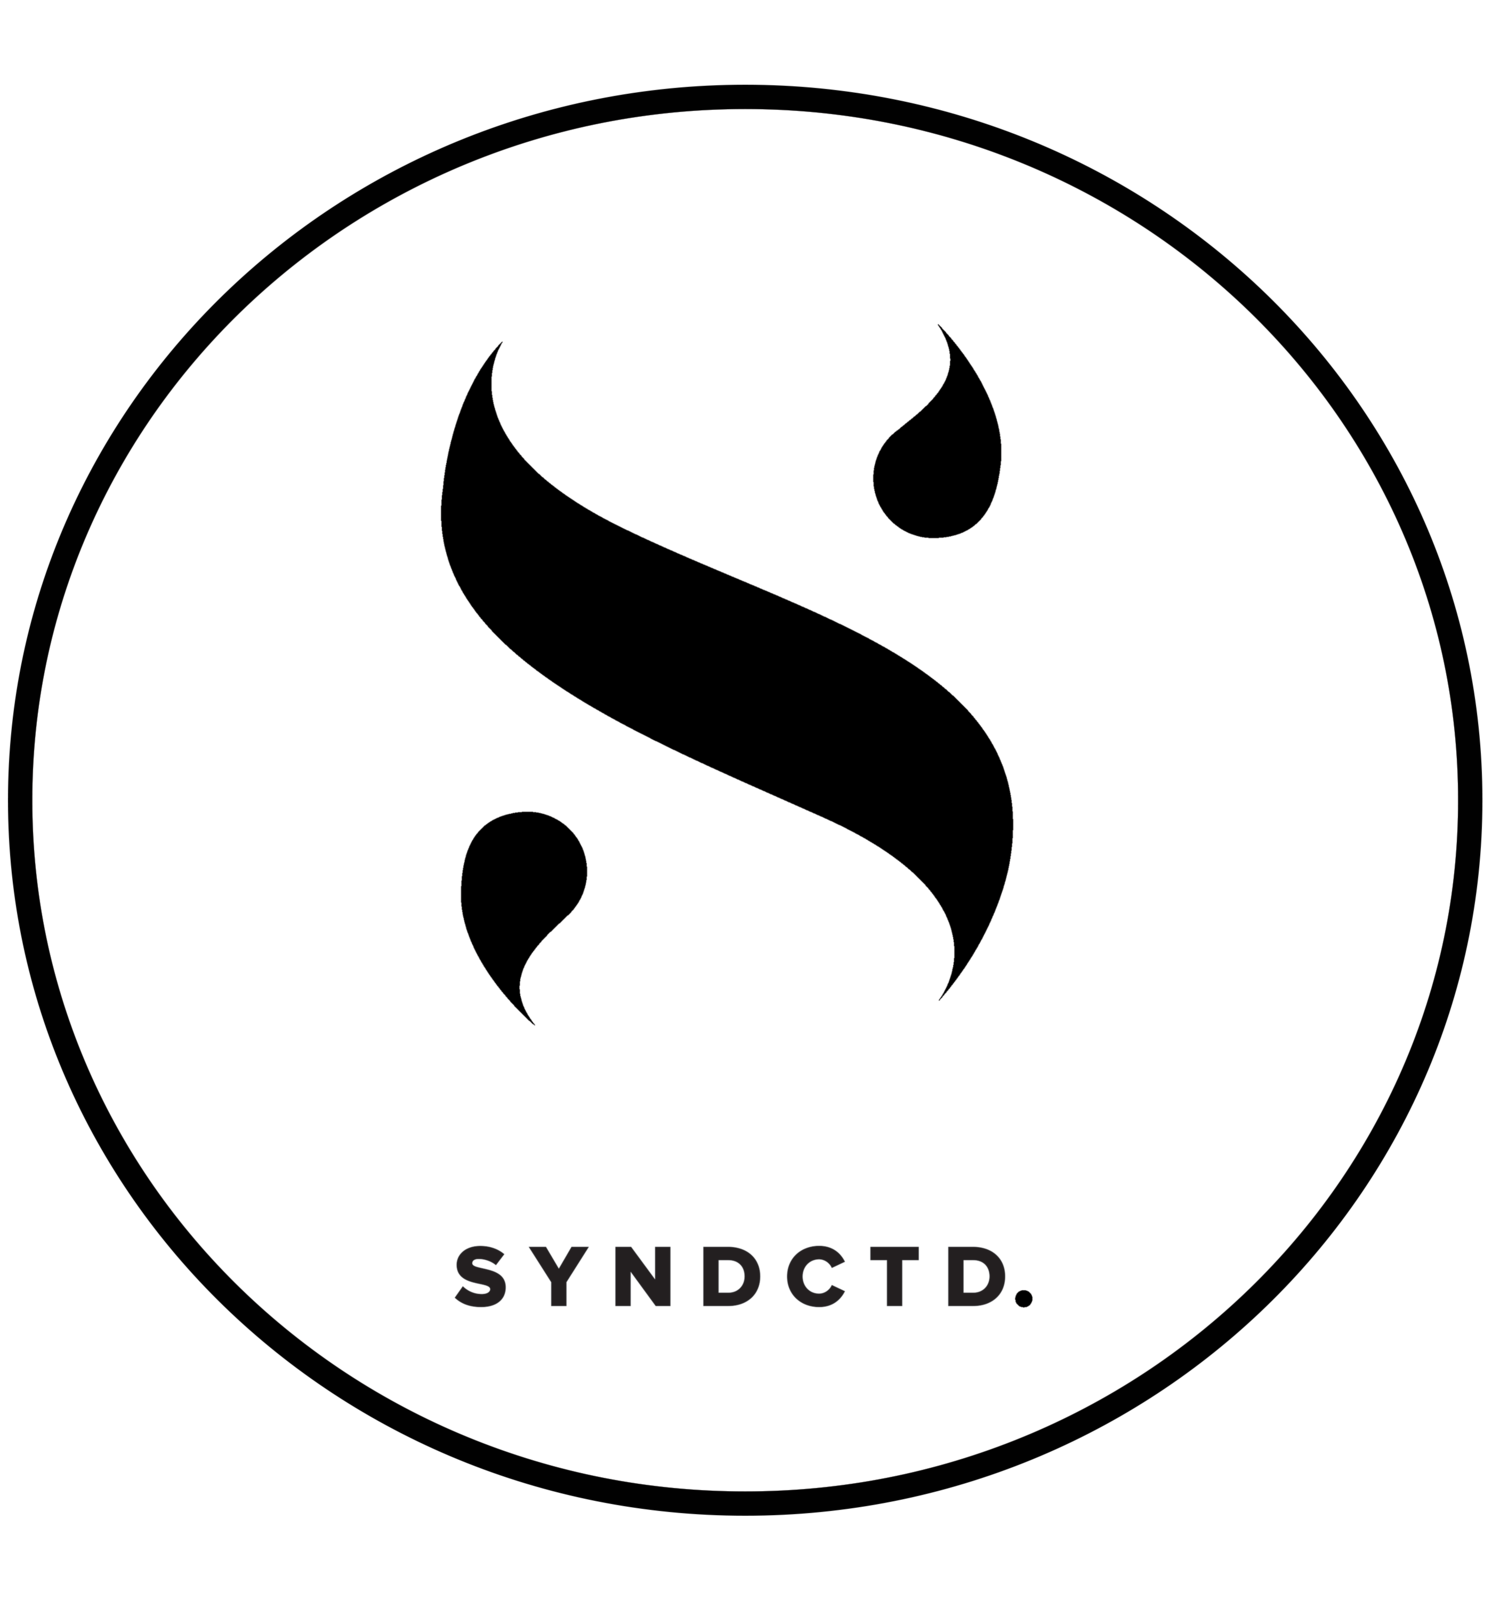  Syndctd - Digital Marketing Agency